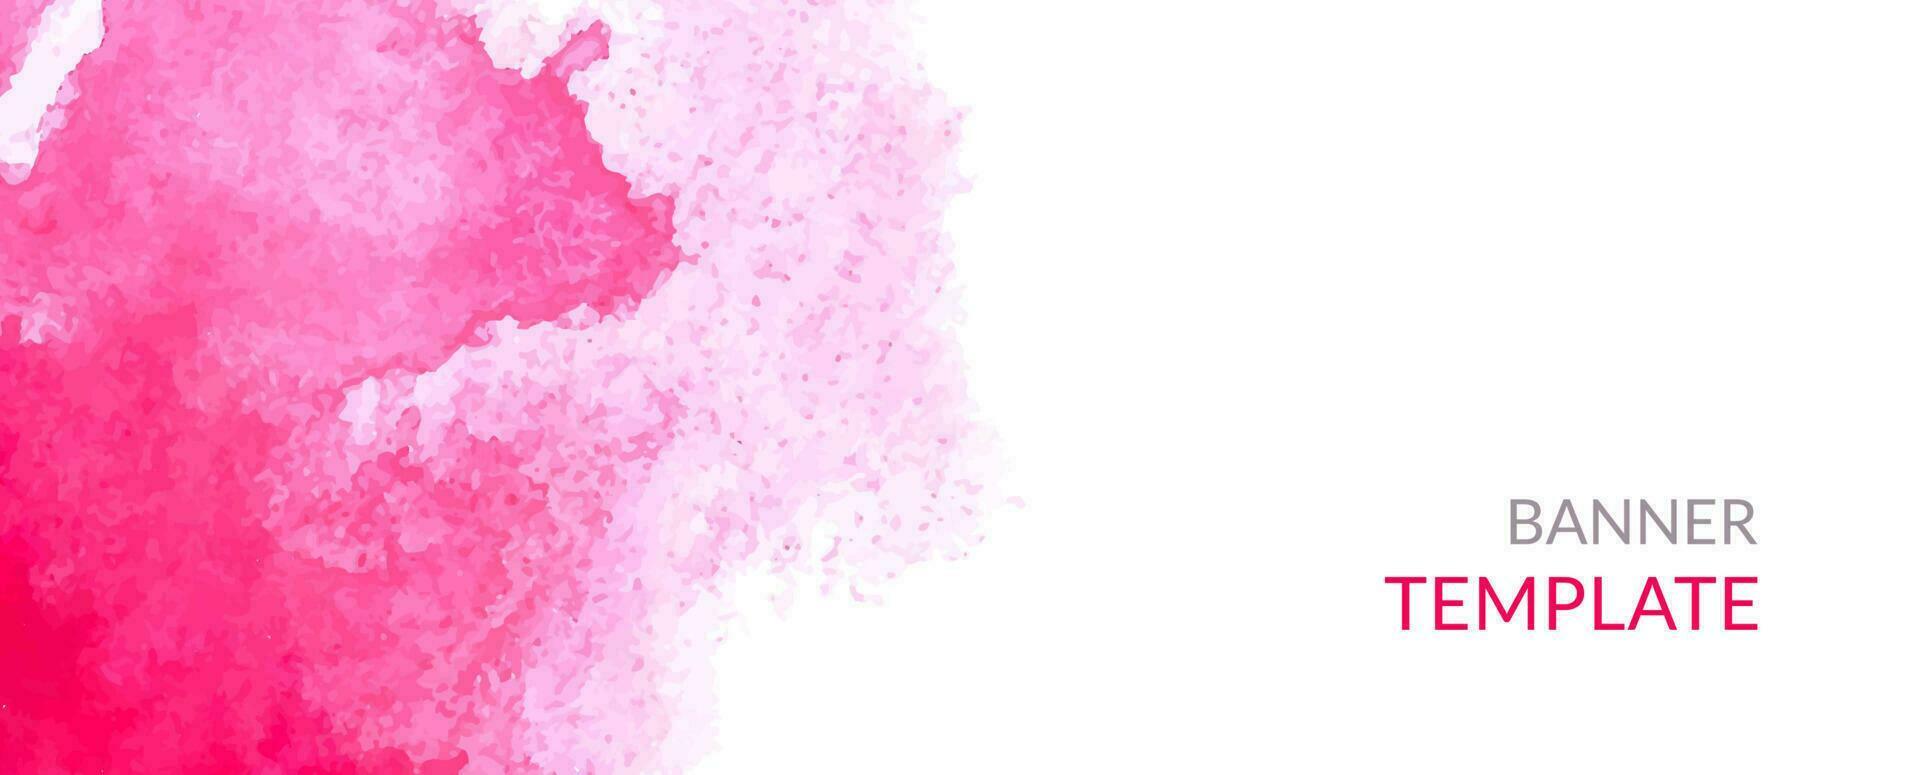 waterverf horizontaal spandoek. abstract kopteksten met roze vlekken. vector